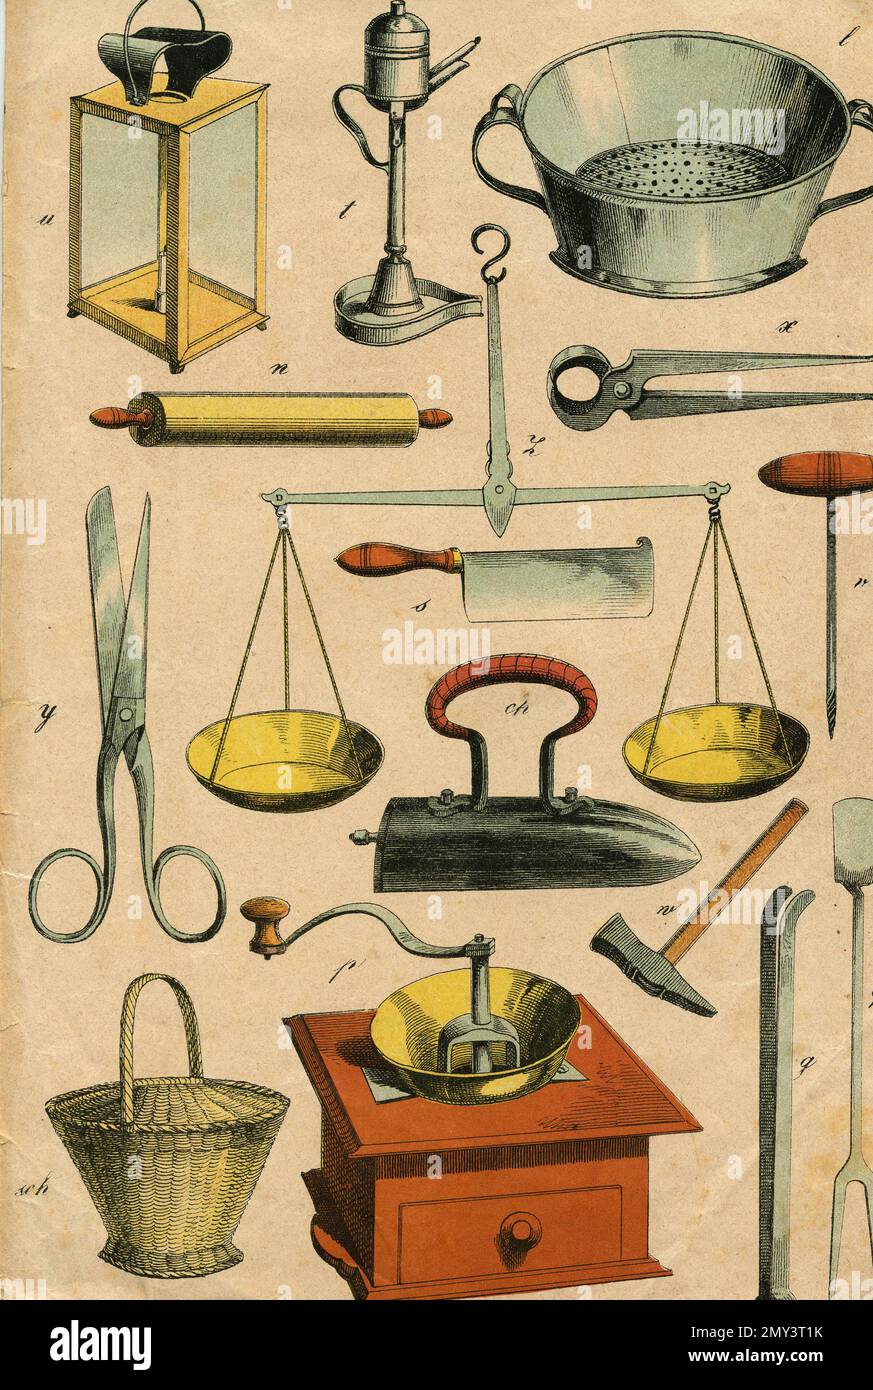 Anciens objets couramment utilisés: Broyeur, échelle, ciseaux, pinces, tamis, fer, panier, etc., illustration de couleur, 1800s Banque D'Images